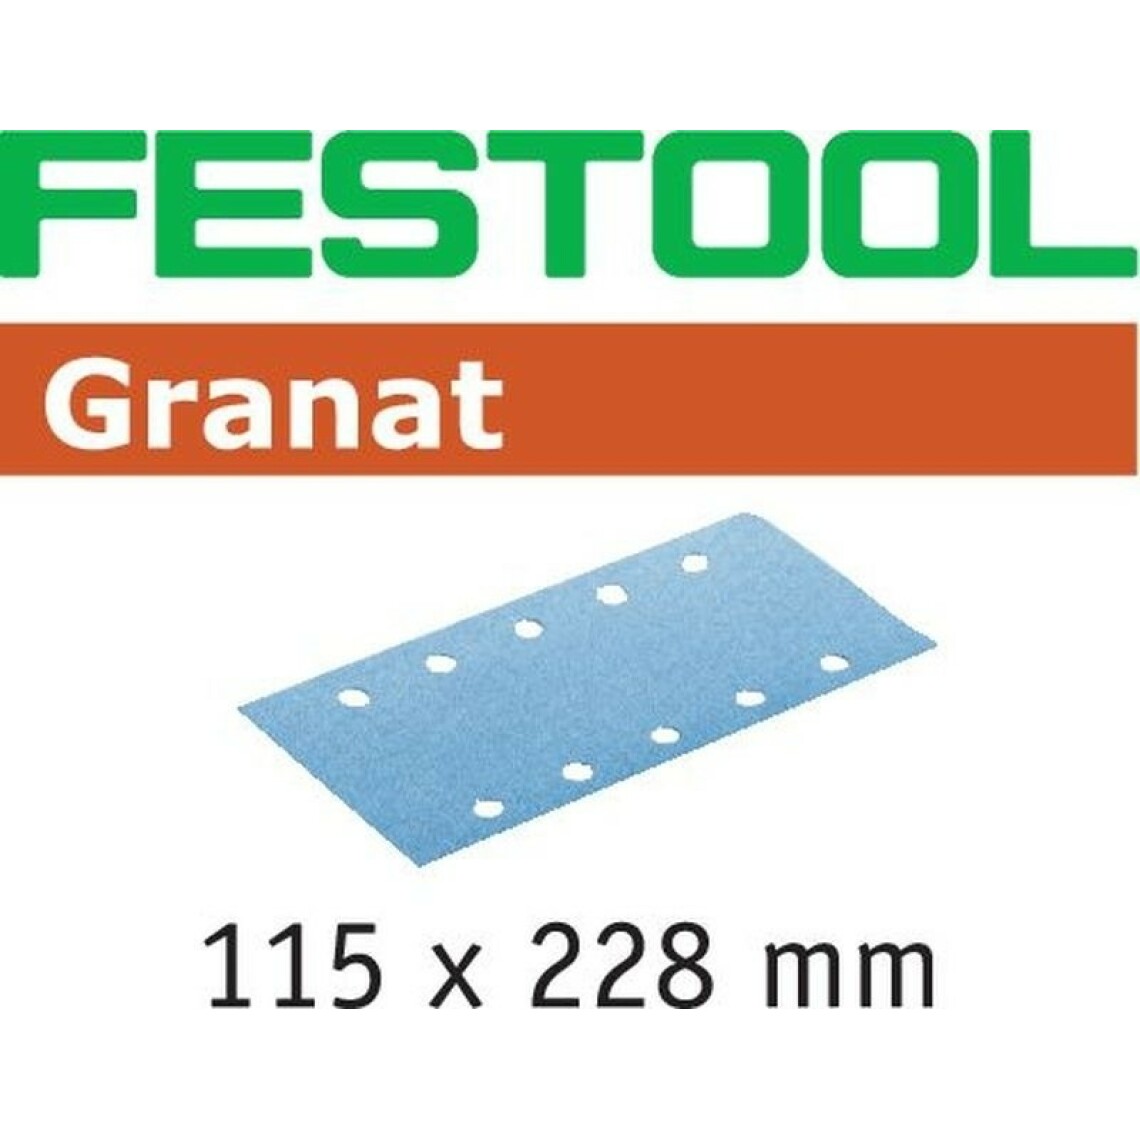 Festool - Abrasifs FESTOOL STF 115X228 P320 GR - Boite de 100 - 498953 - Verrou, cadenas, targette